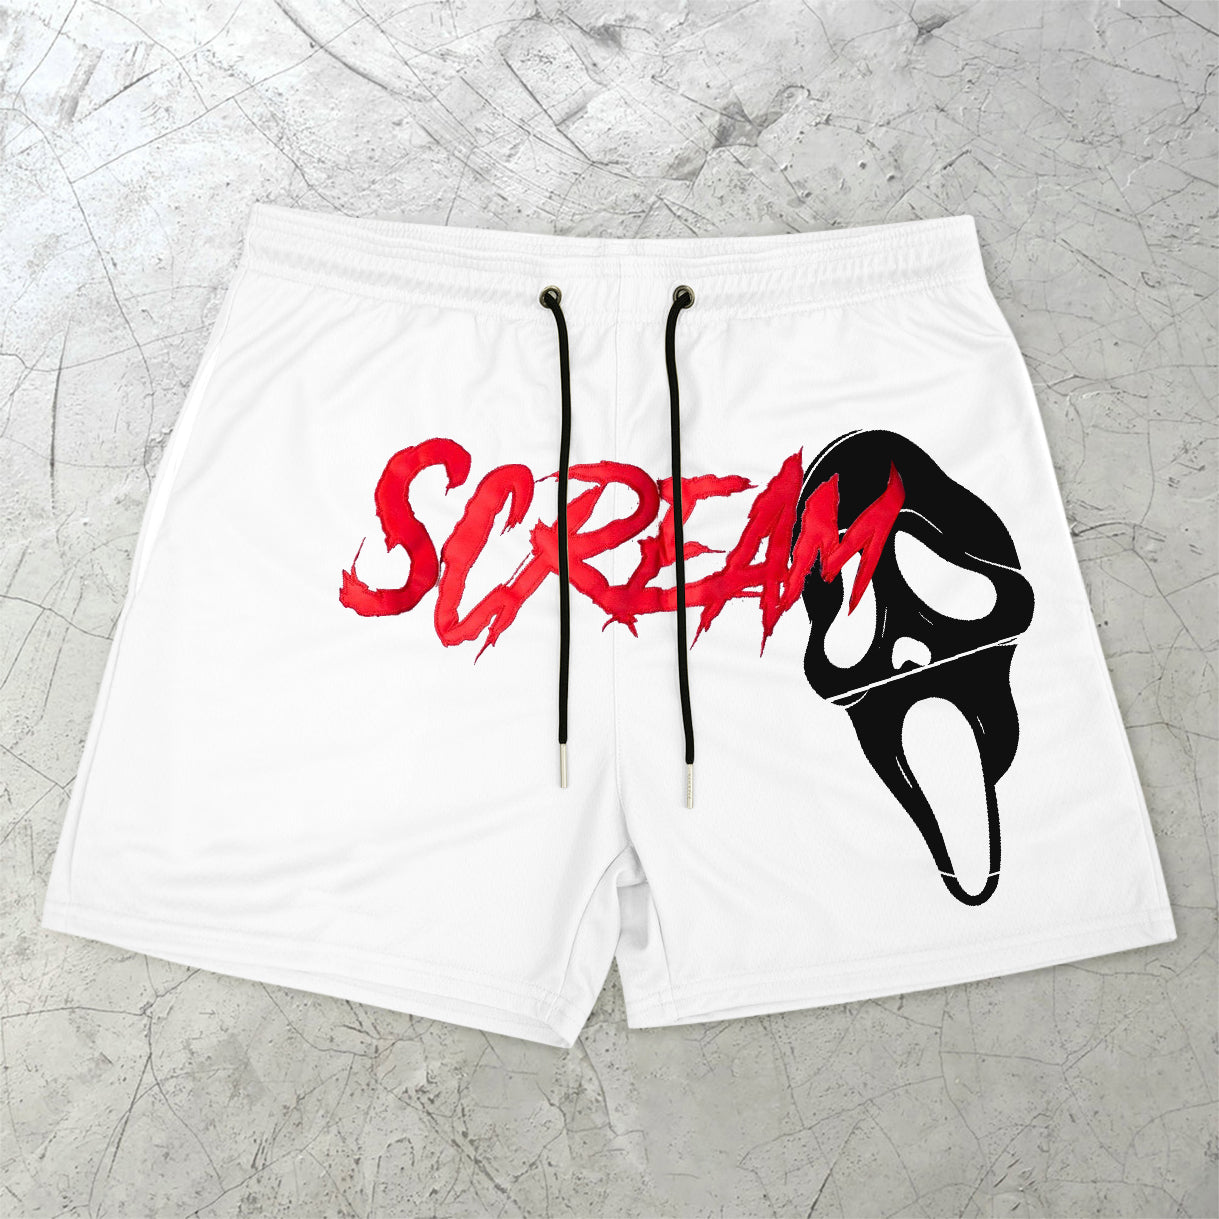 Scream Retro Casual Sports Shorts